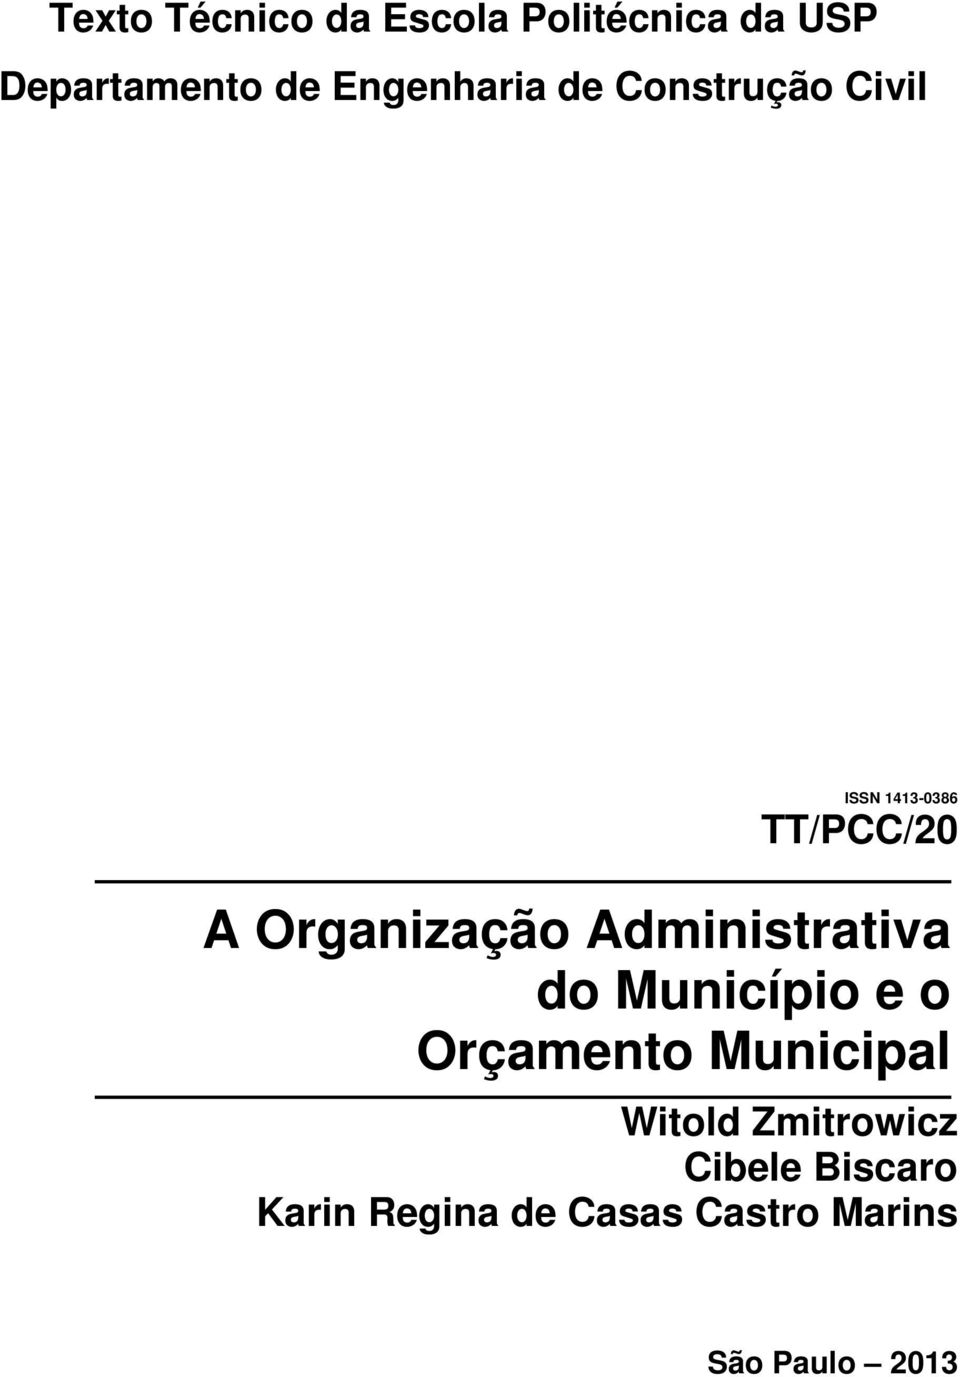 Organização Administrativa do Município e o Orçamento Municipal